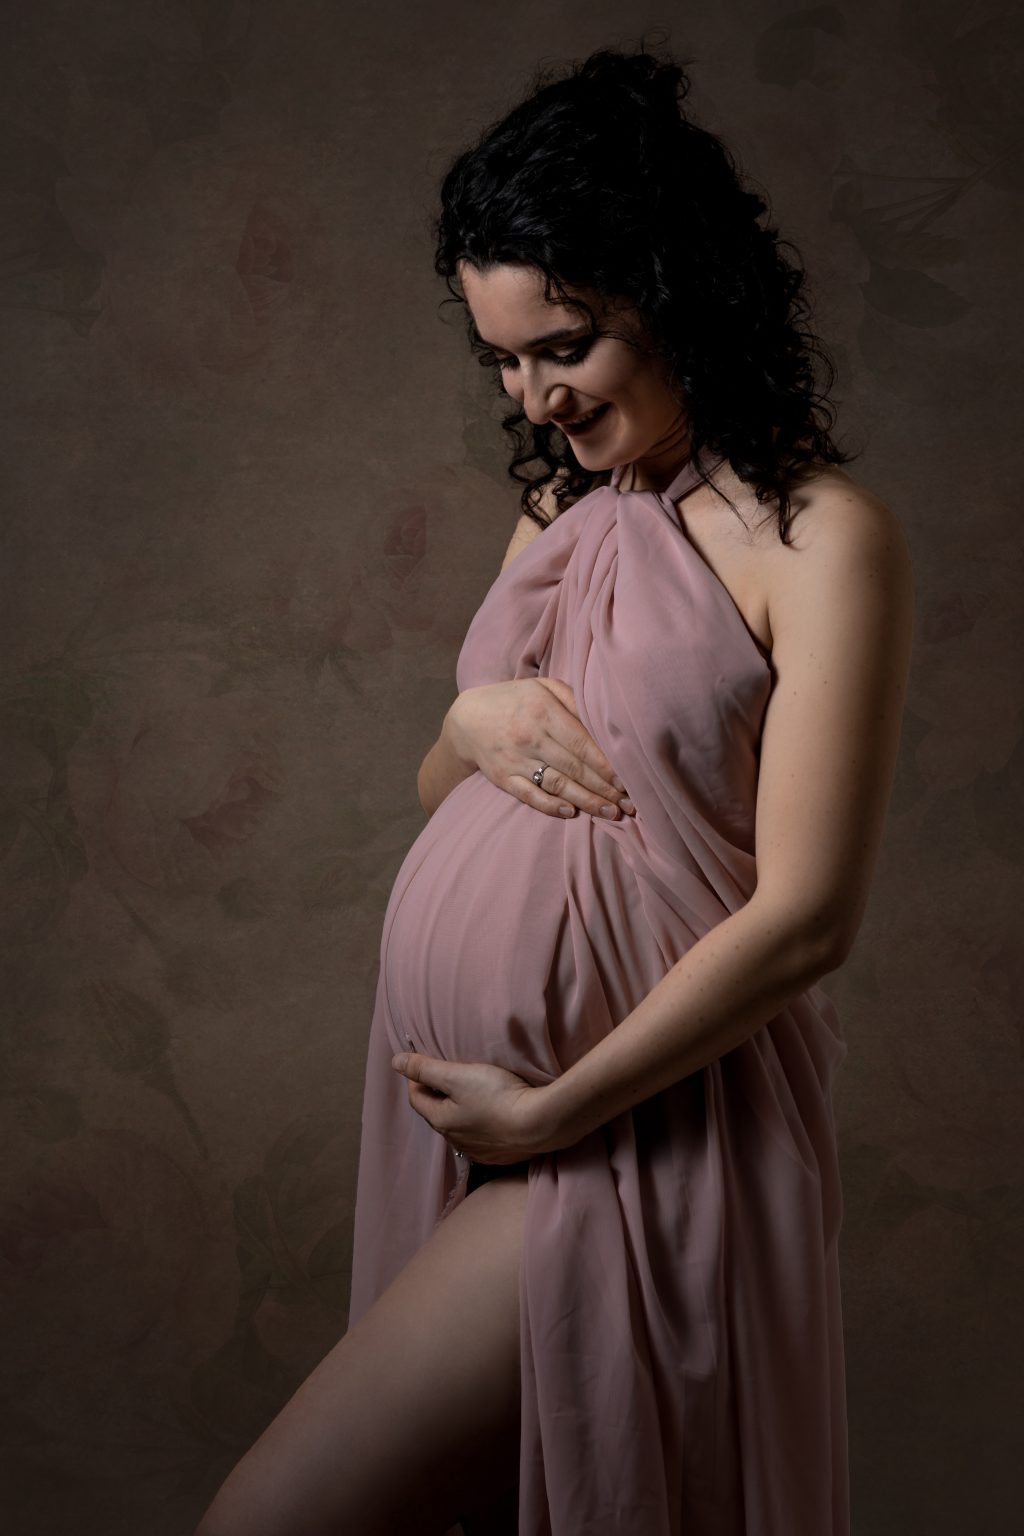 zwangerschap fotograaf amersfoort doeken sjaal stof fotostudio